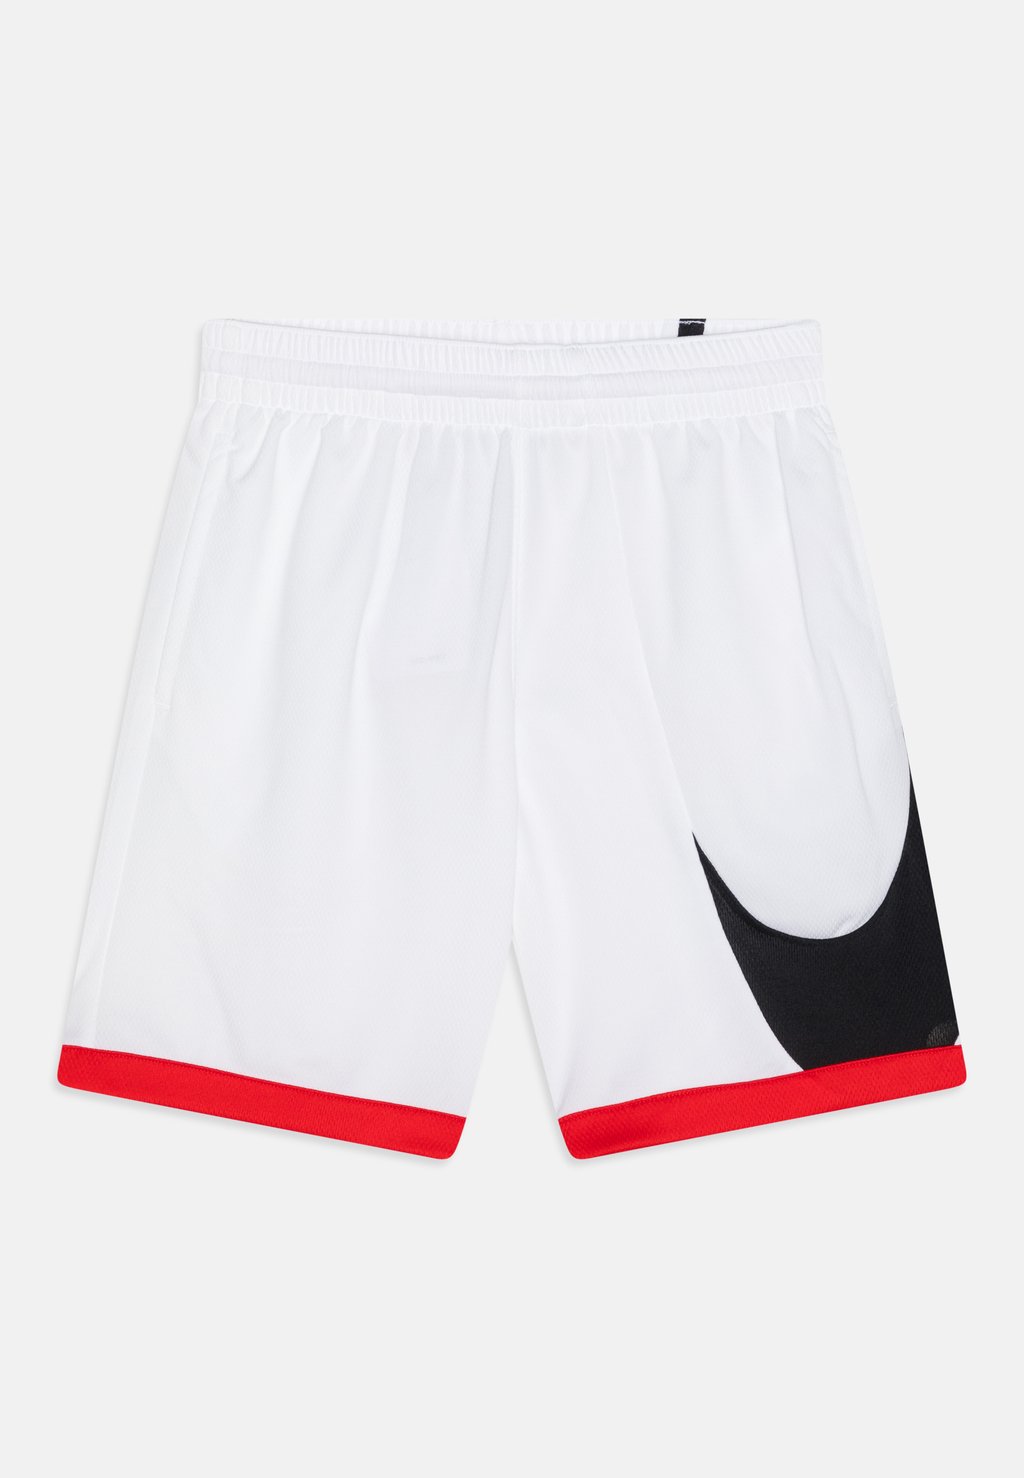 Спортивные шорты Df Basketball Short Nike, цвет white/university red/black спортивные шорты df unisex nike цвет university red white